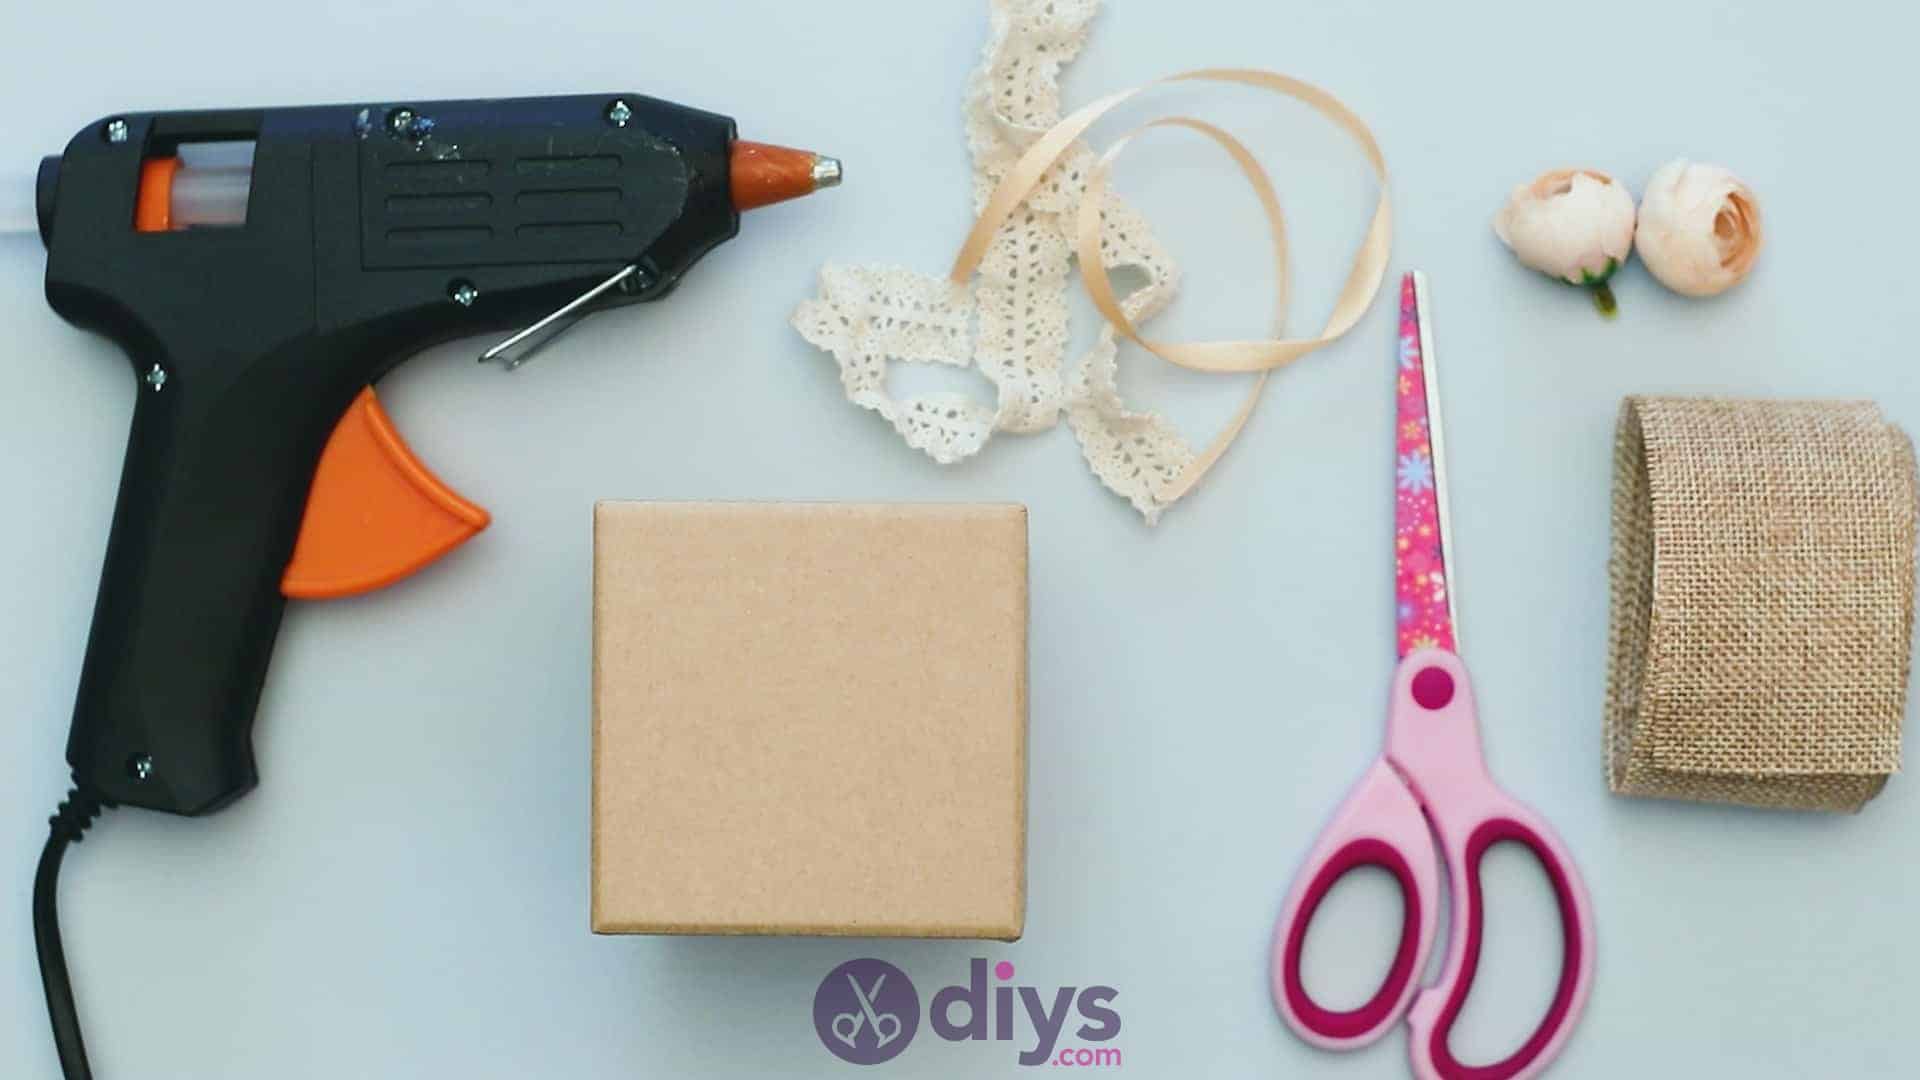 Diy jute gift box materials